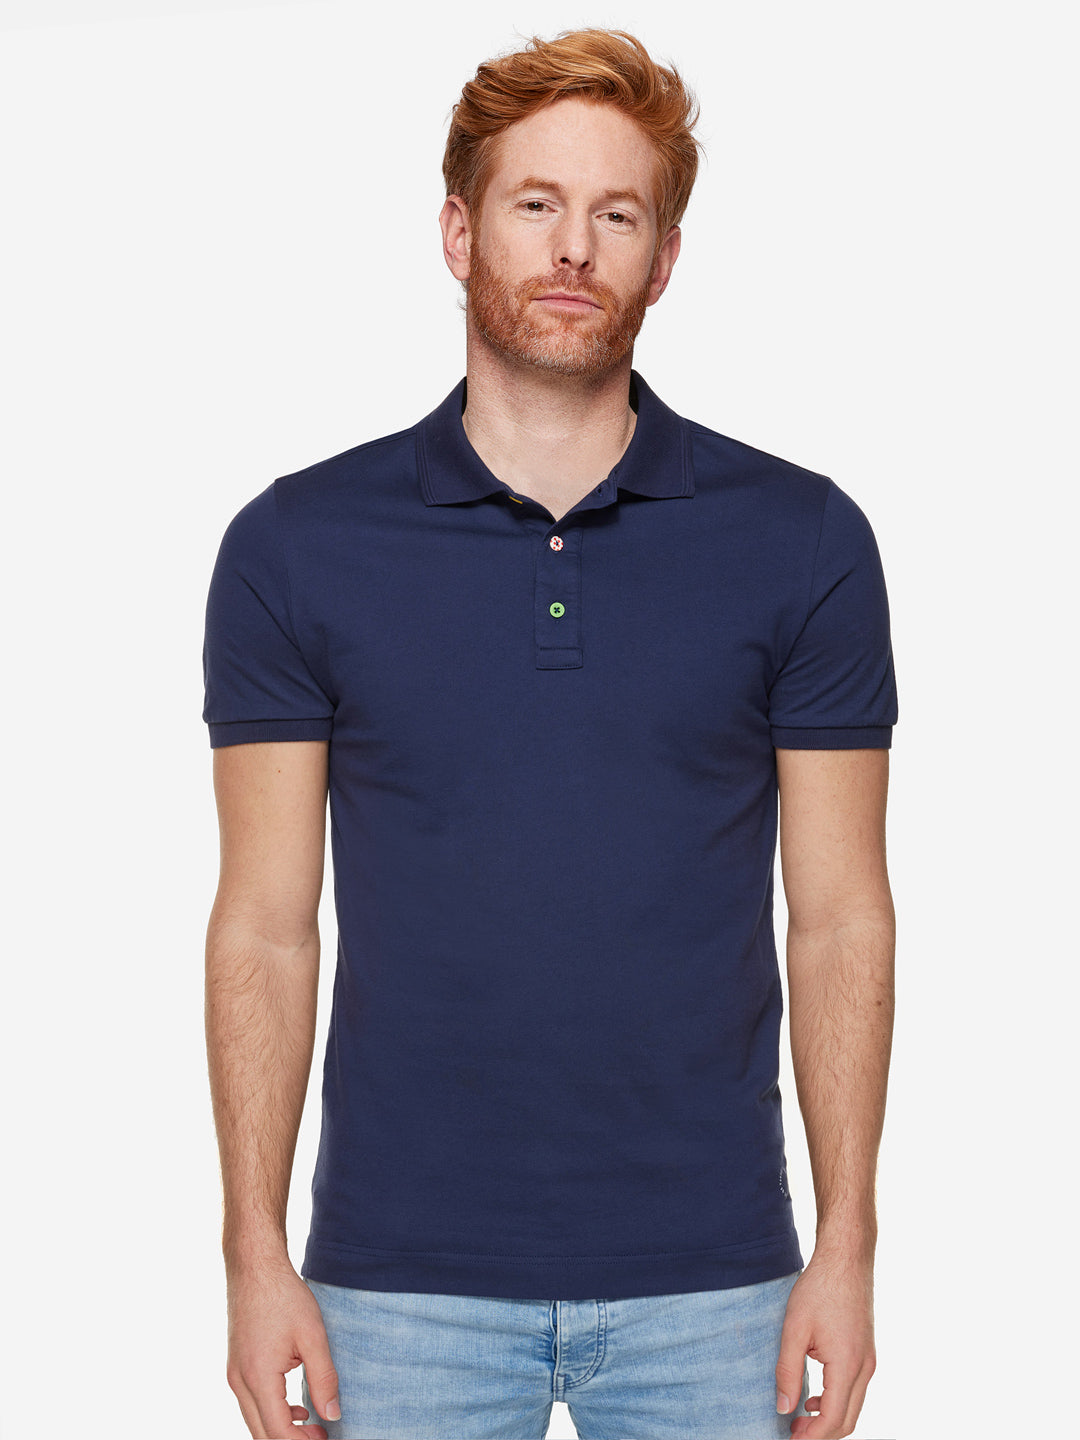 Grande Boucle - Polo Shirt - Navy